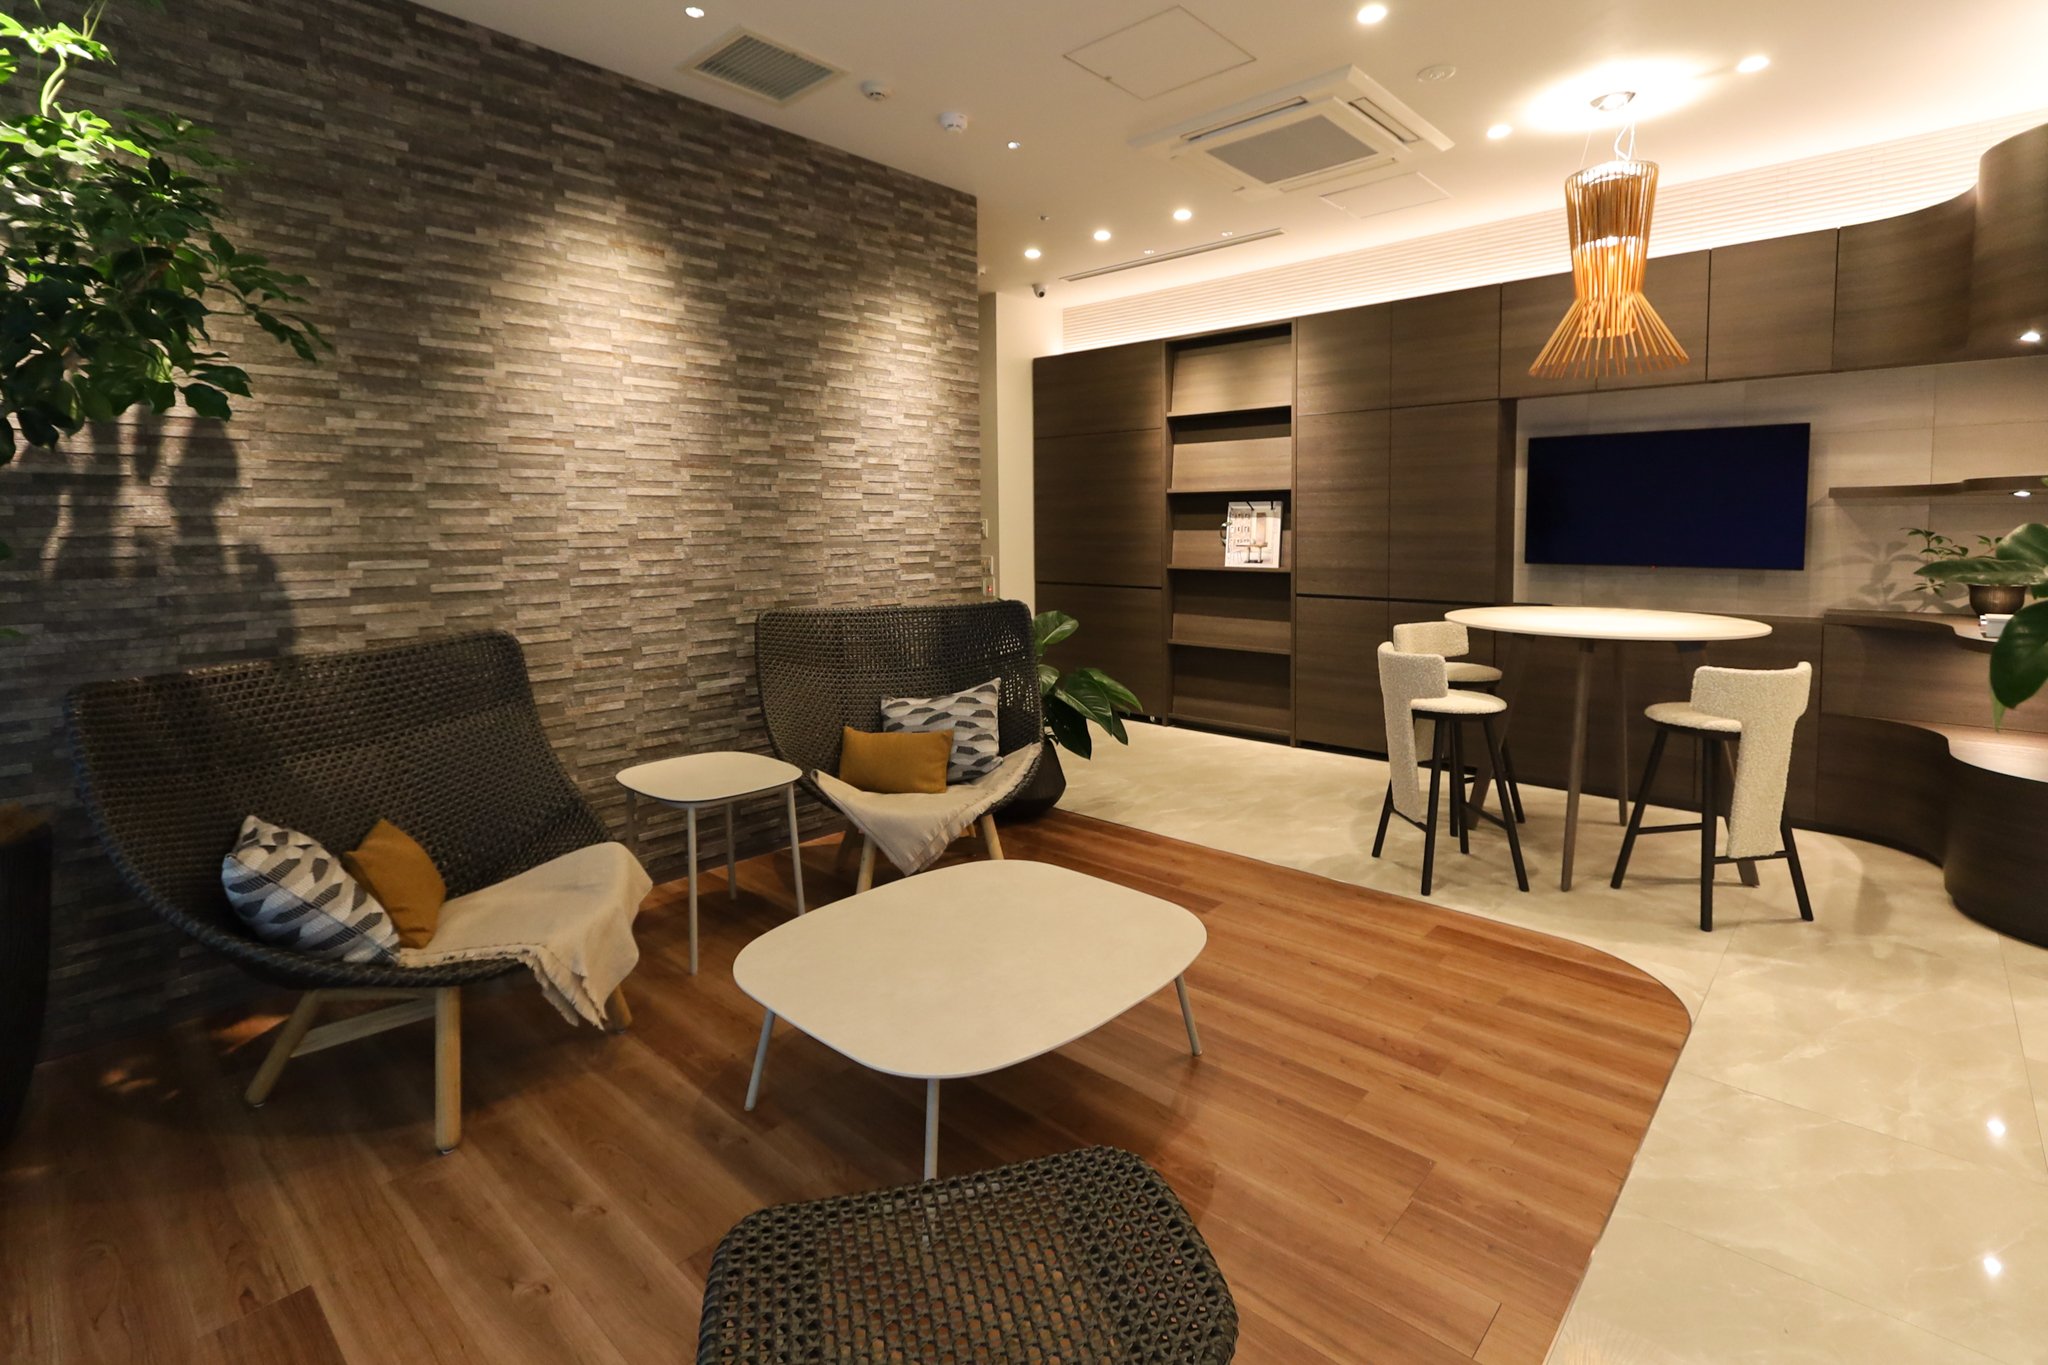 「オフィスの応接室や会議室などの共有スペースは、オーダー家具で個性を出す」